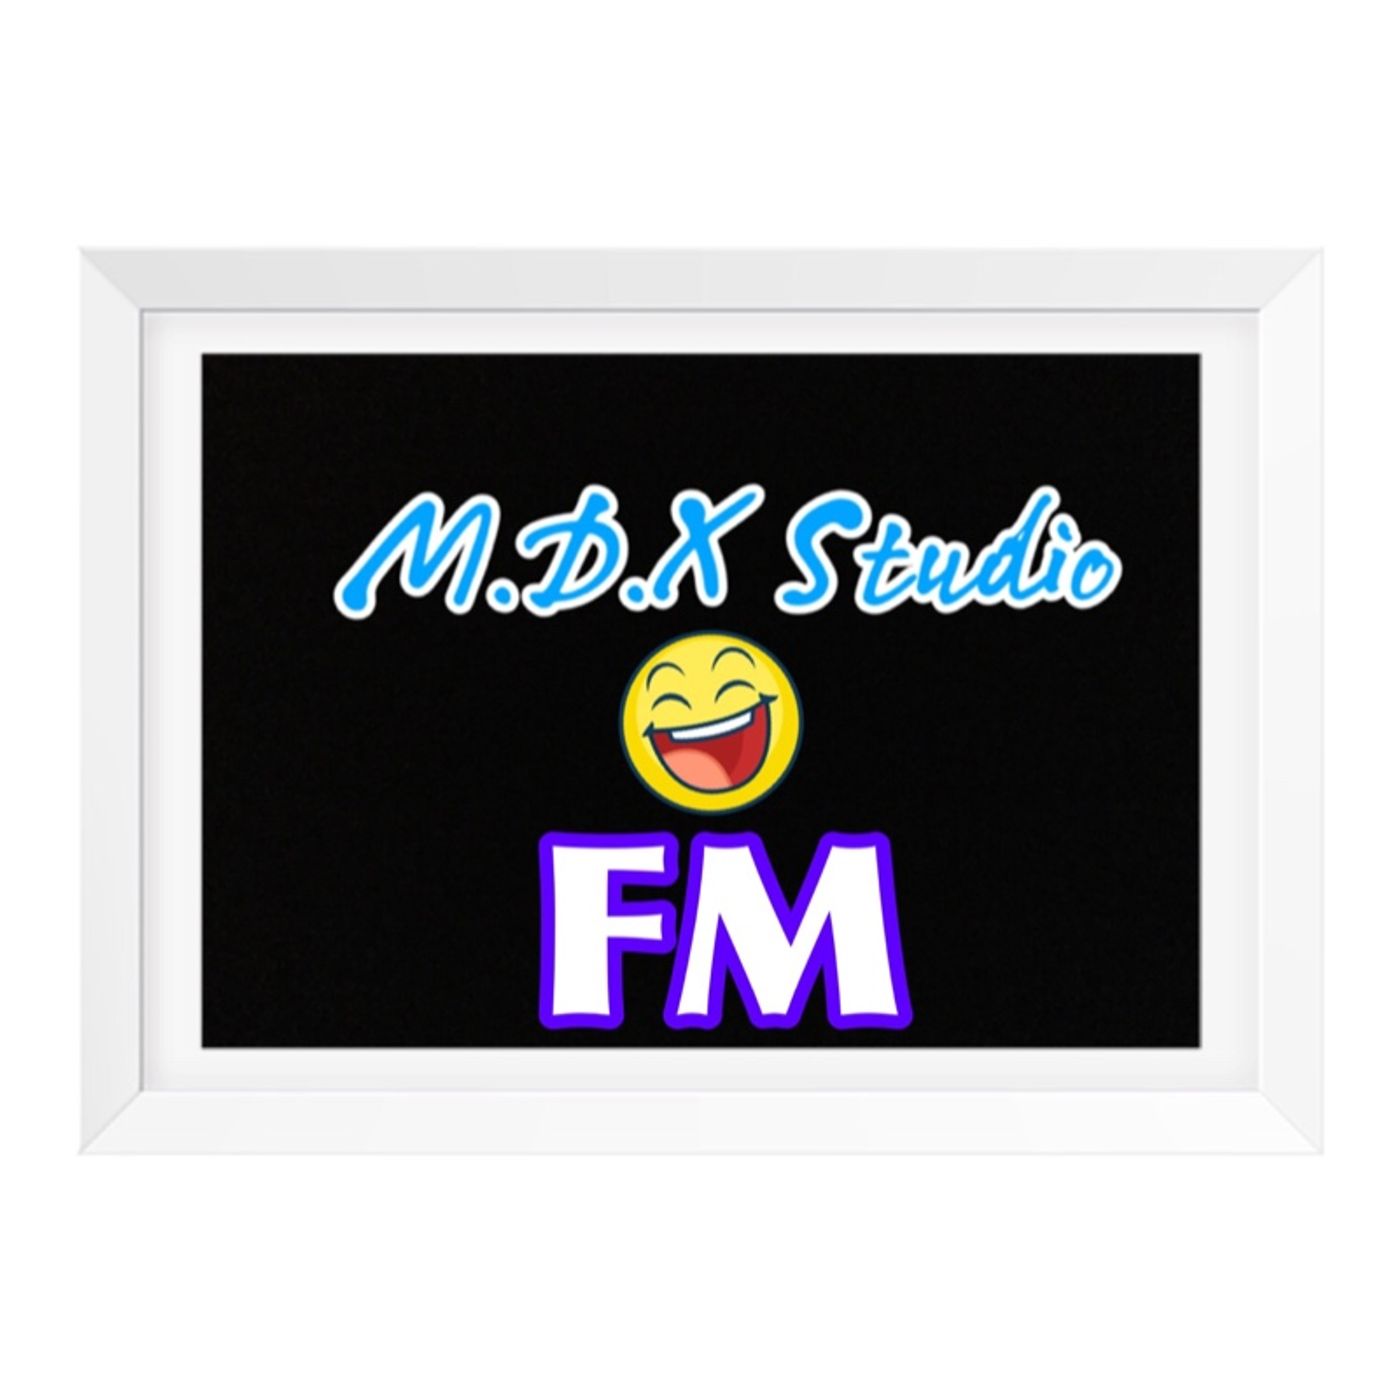 M.D.X Studio FM:M.D.X Studio